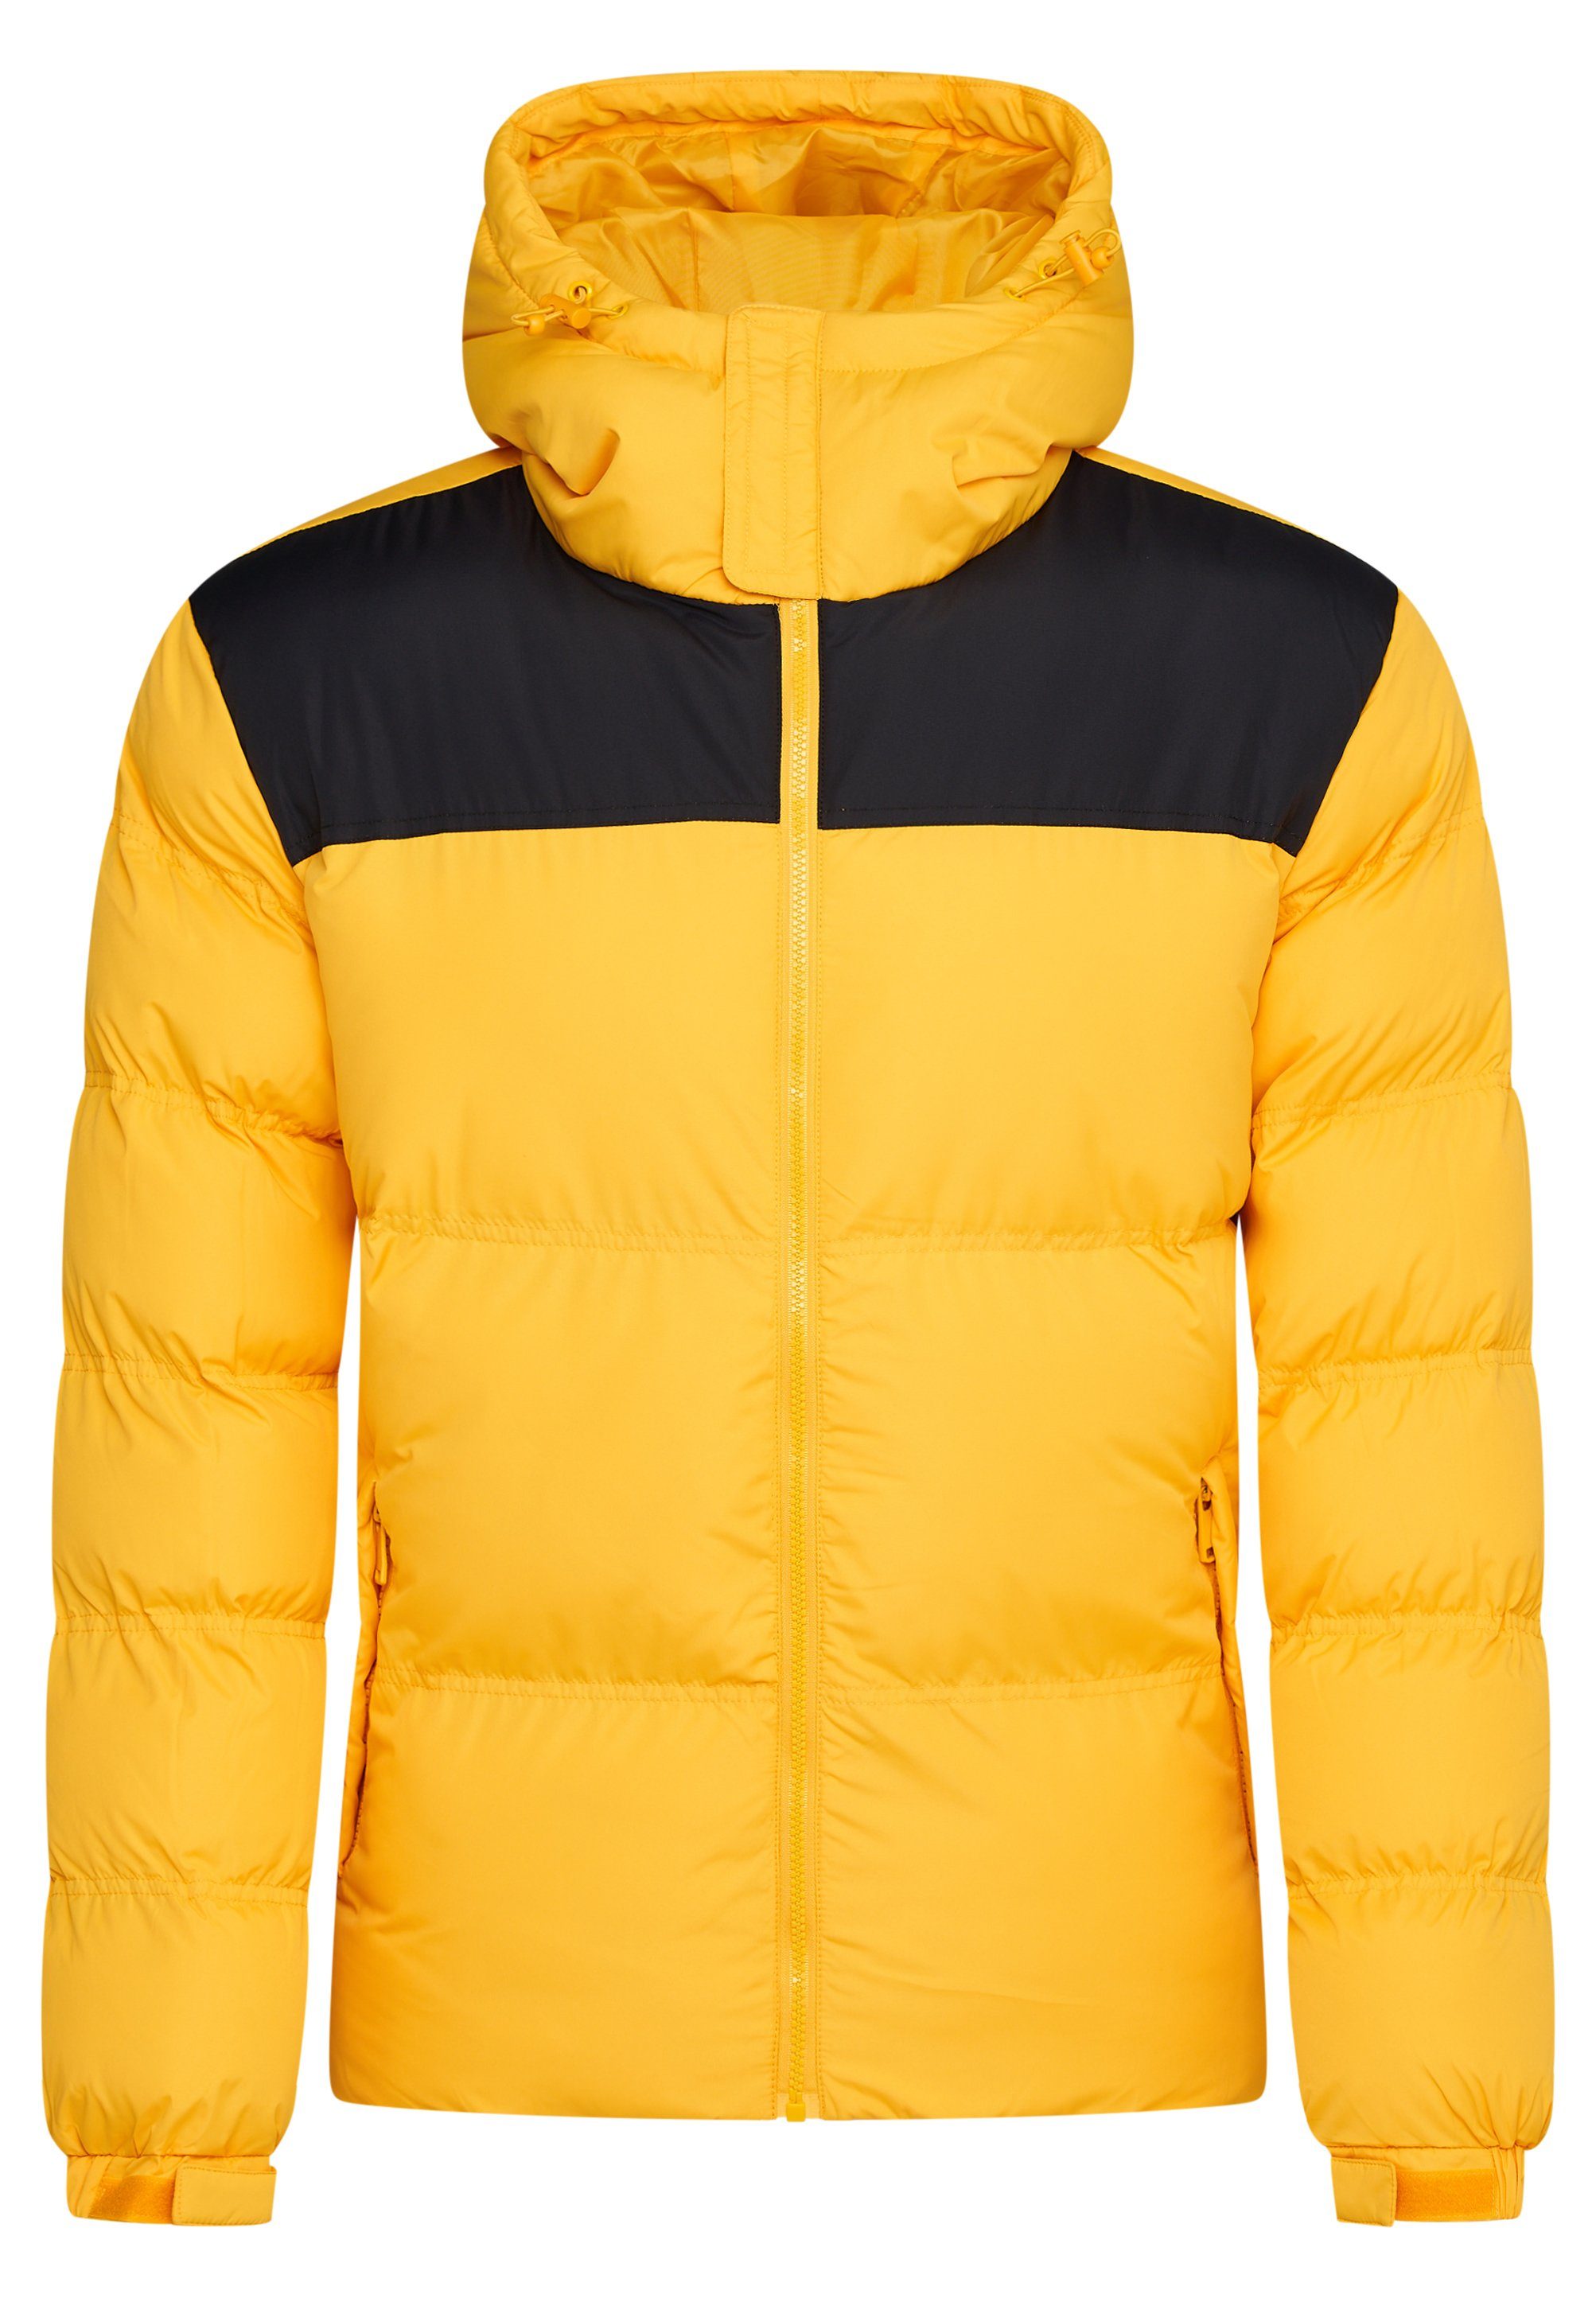 SOULSTAR Winterjacke S2KRAGERO Puffer Jacke warme mit Kapuze Steppjacke Panel-Gelb